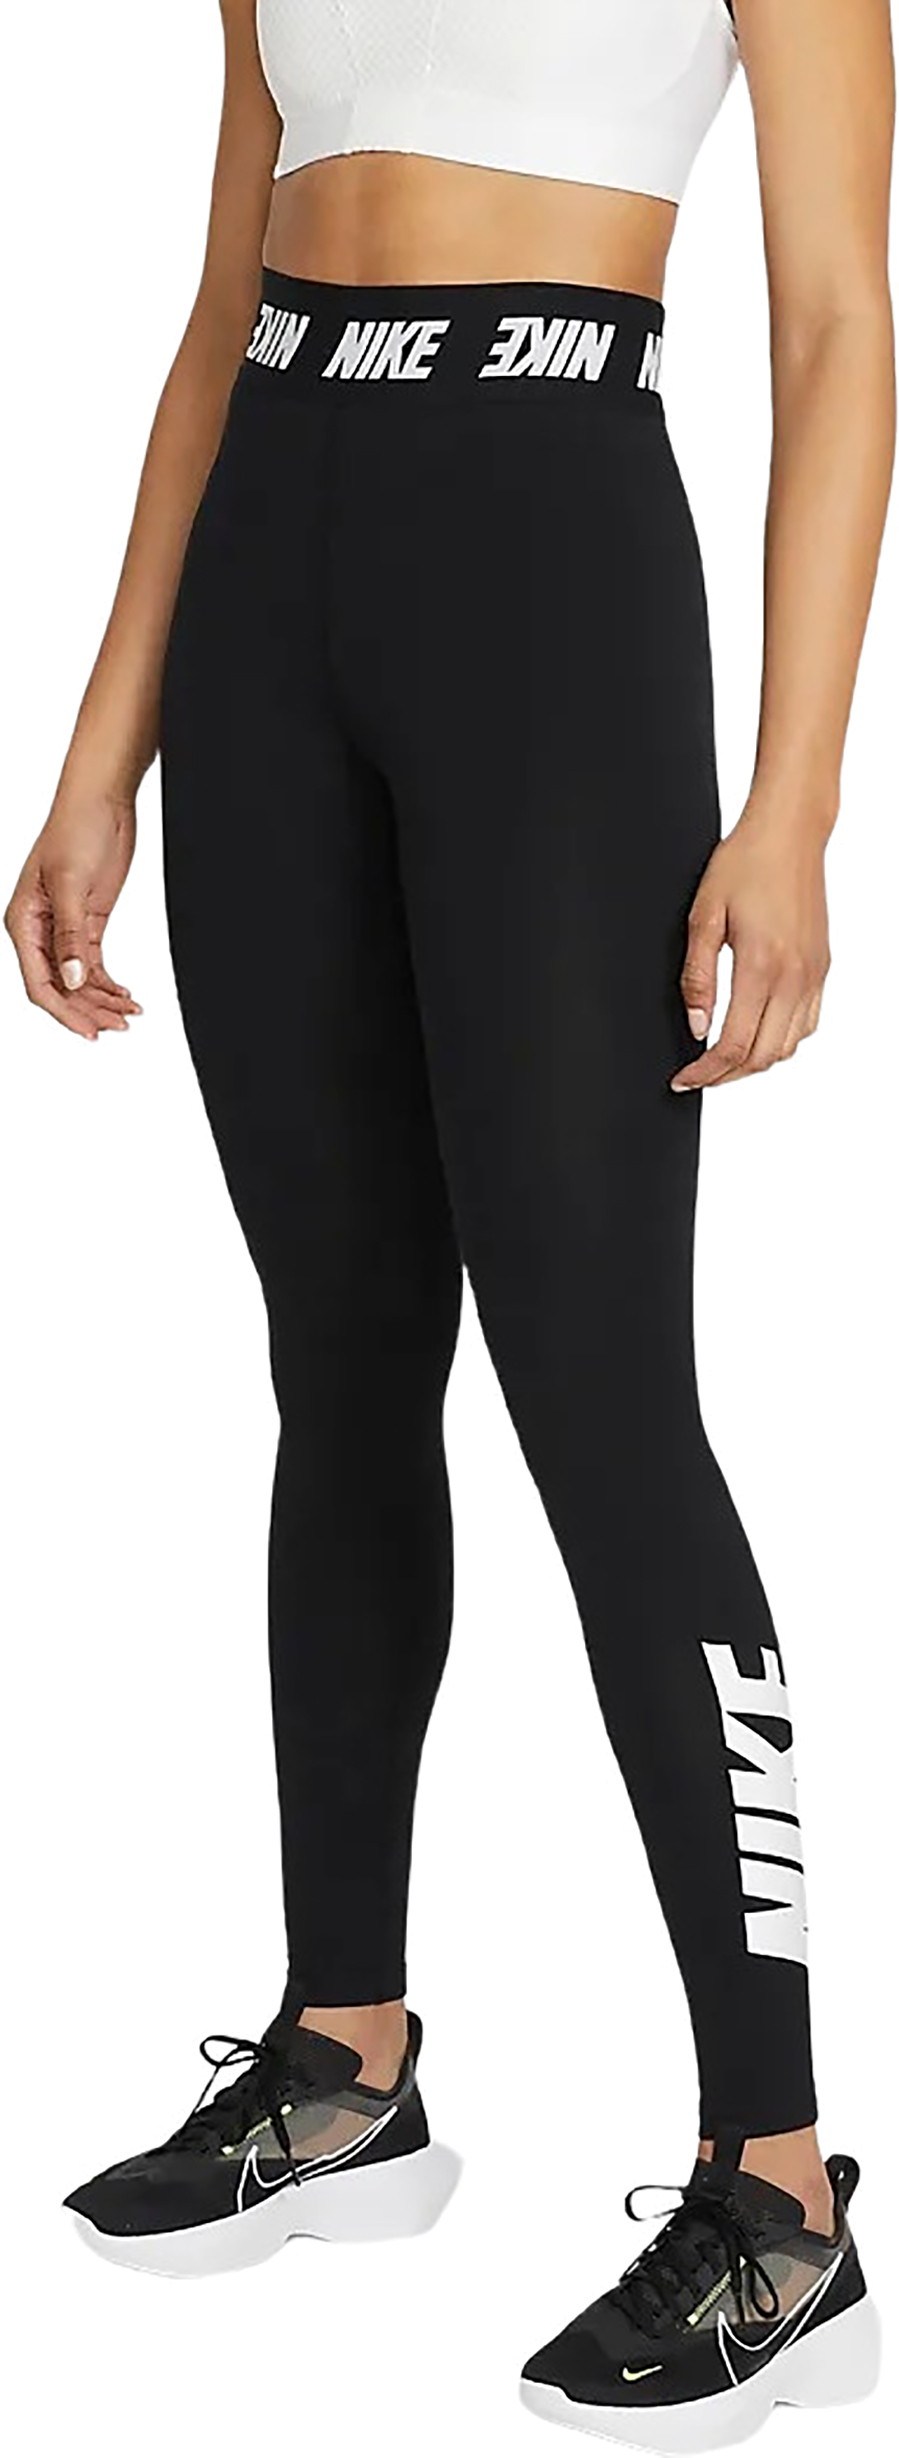 Спортивные леггинсы женские Nike W Sportswear Femme Tights черные S